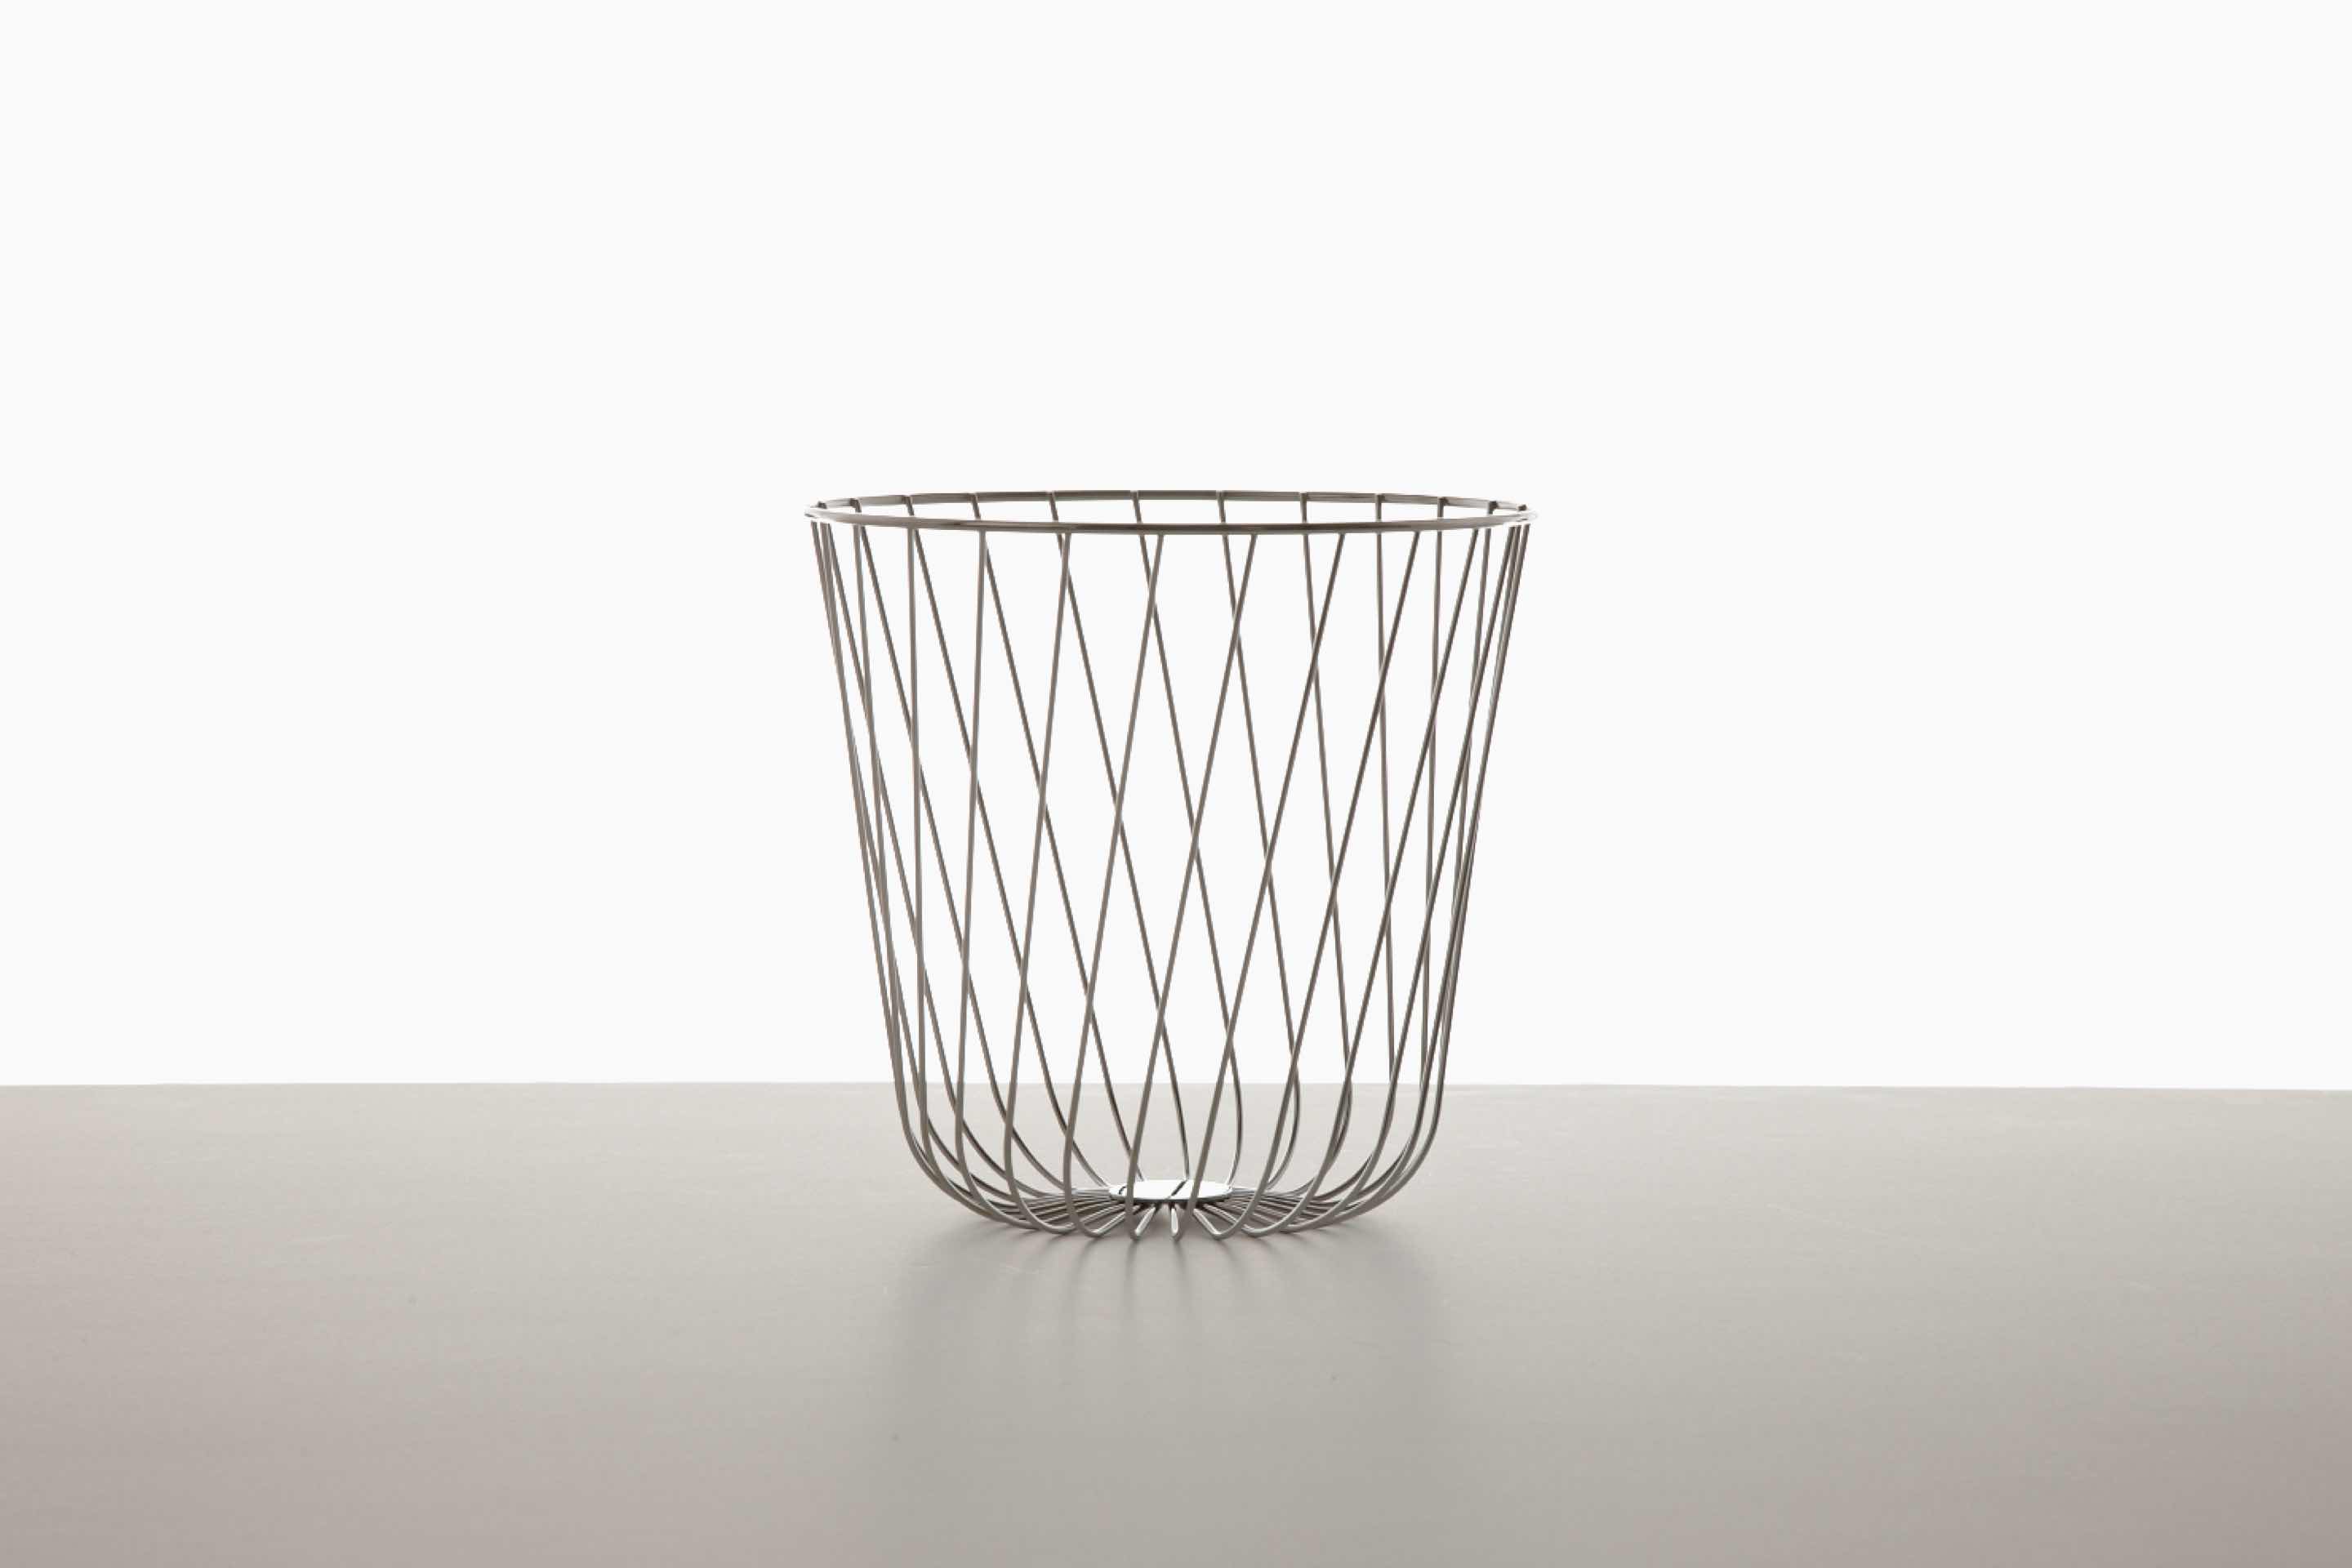 An empty round wire basket.